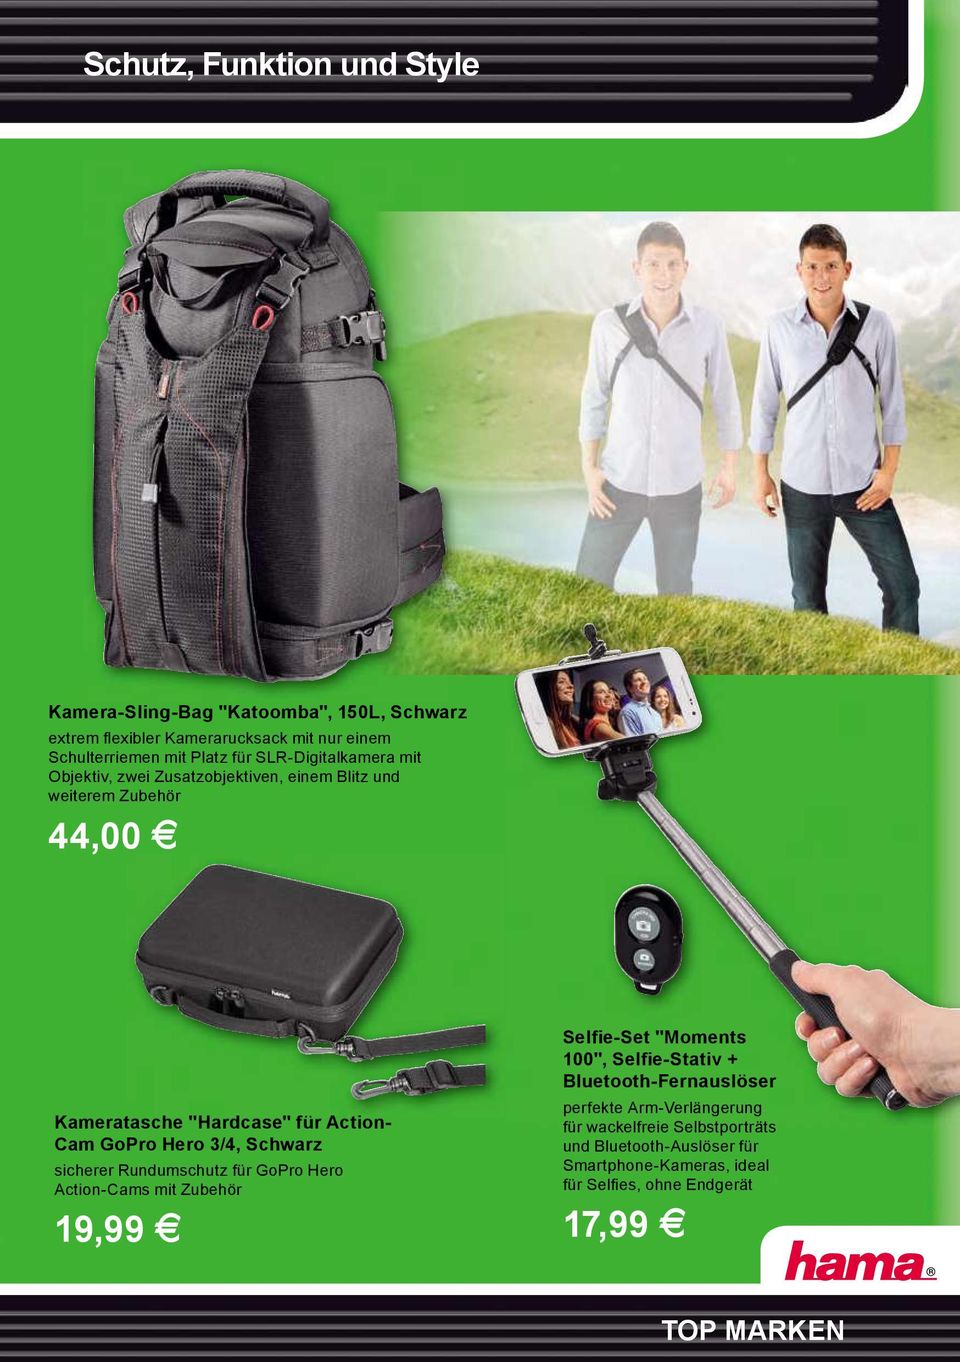 3/4, Schwarz sicherer Rundumschutz für GoPro Hero Action-Cams mit Zubehör 19,99 Selfie-Set "Moments 100", Selfie-Stativ + Bluetooth-Fernauslöser